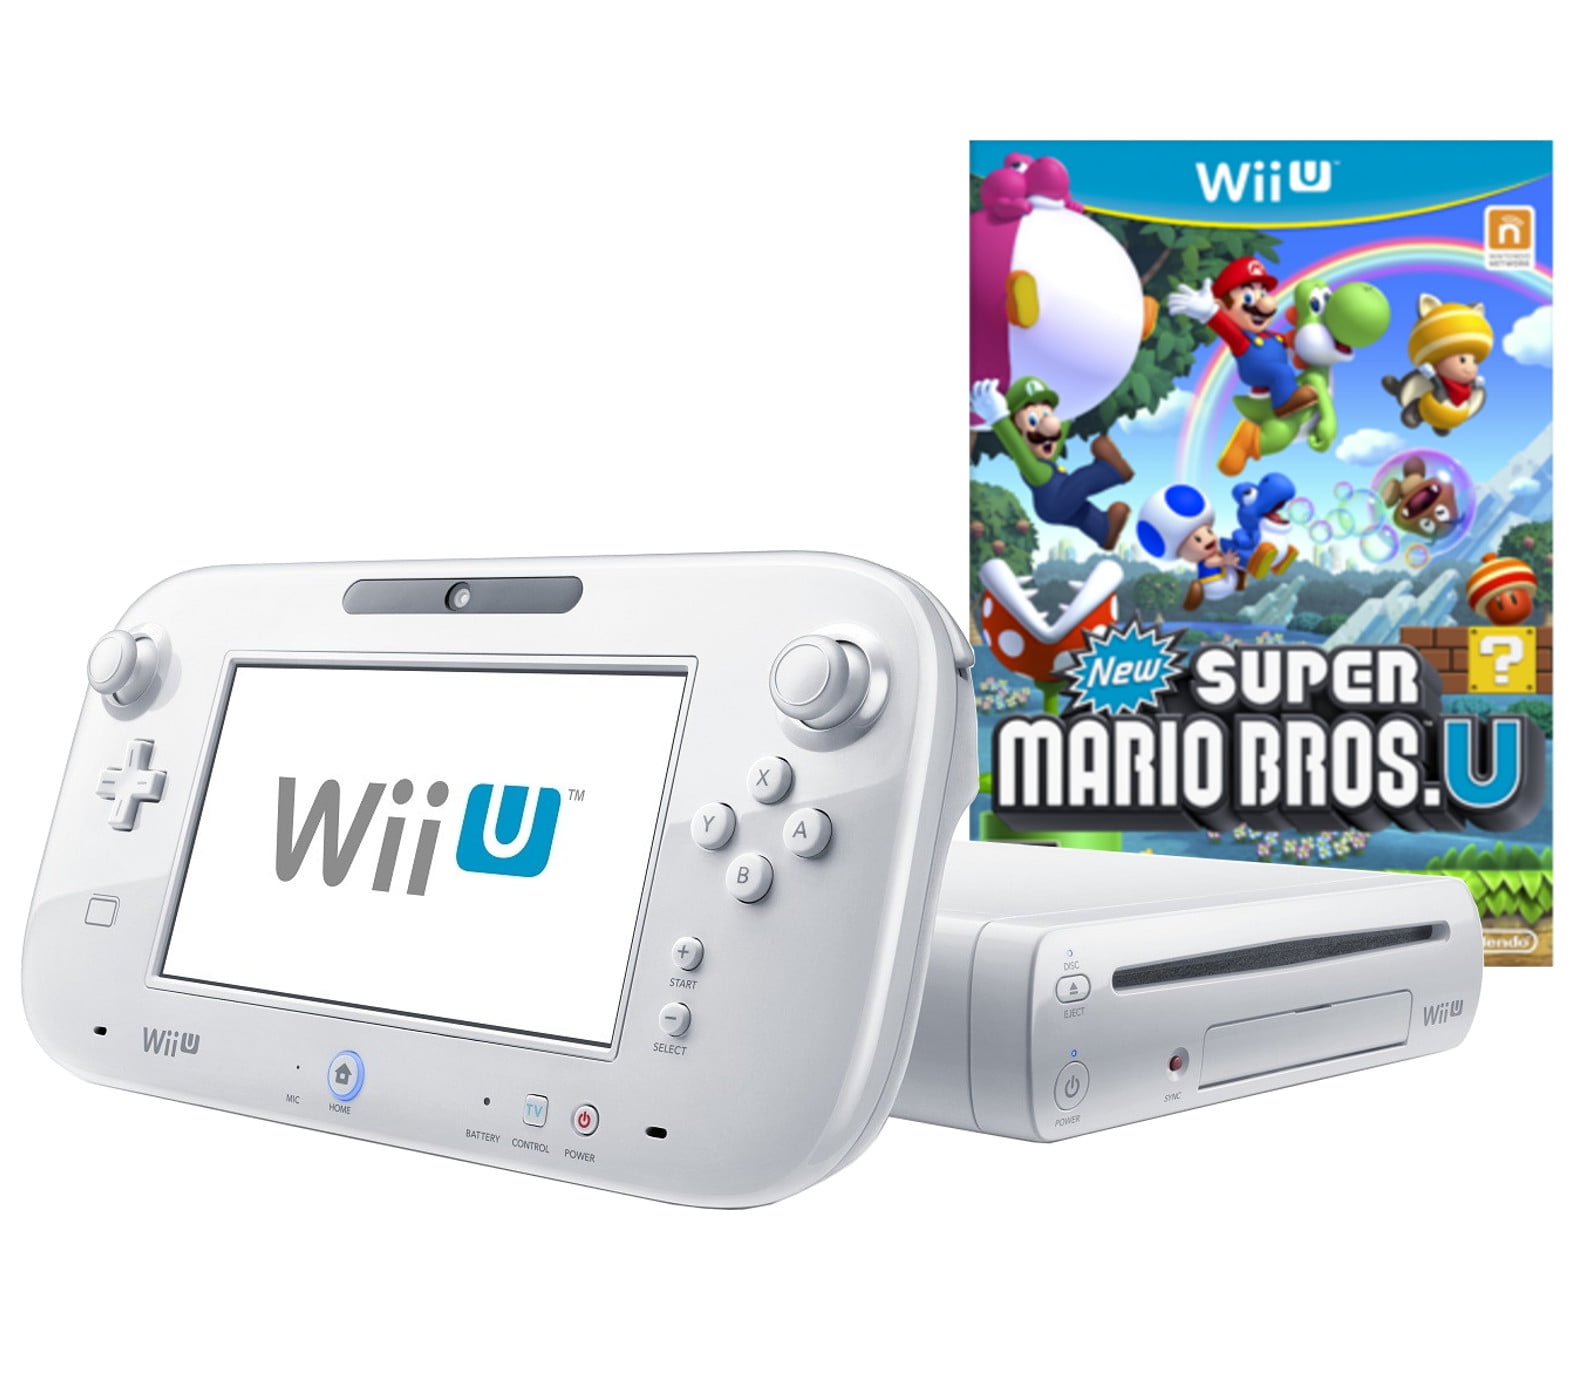 Nintendo Wii CONSOLE SUPER MARIO BROS SPORTS BUNDLE 4 GAMES SYSTEME